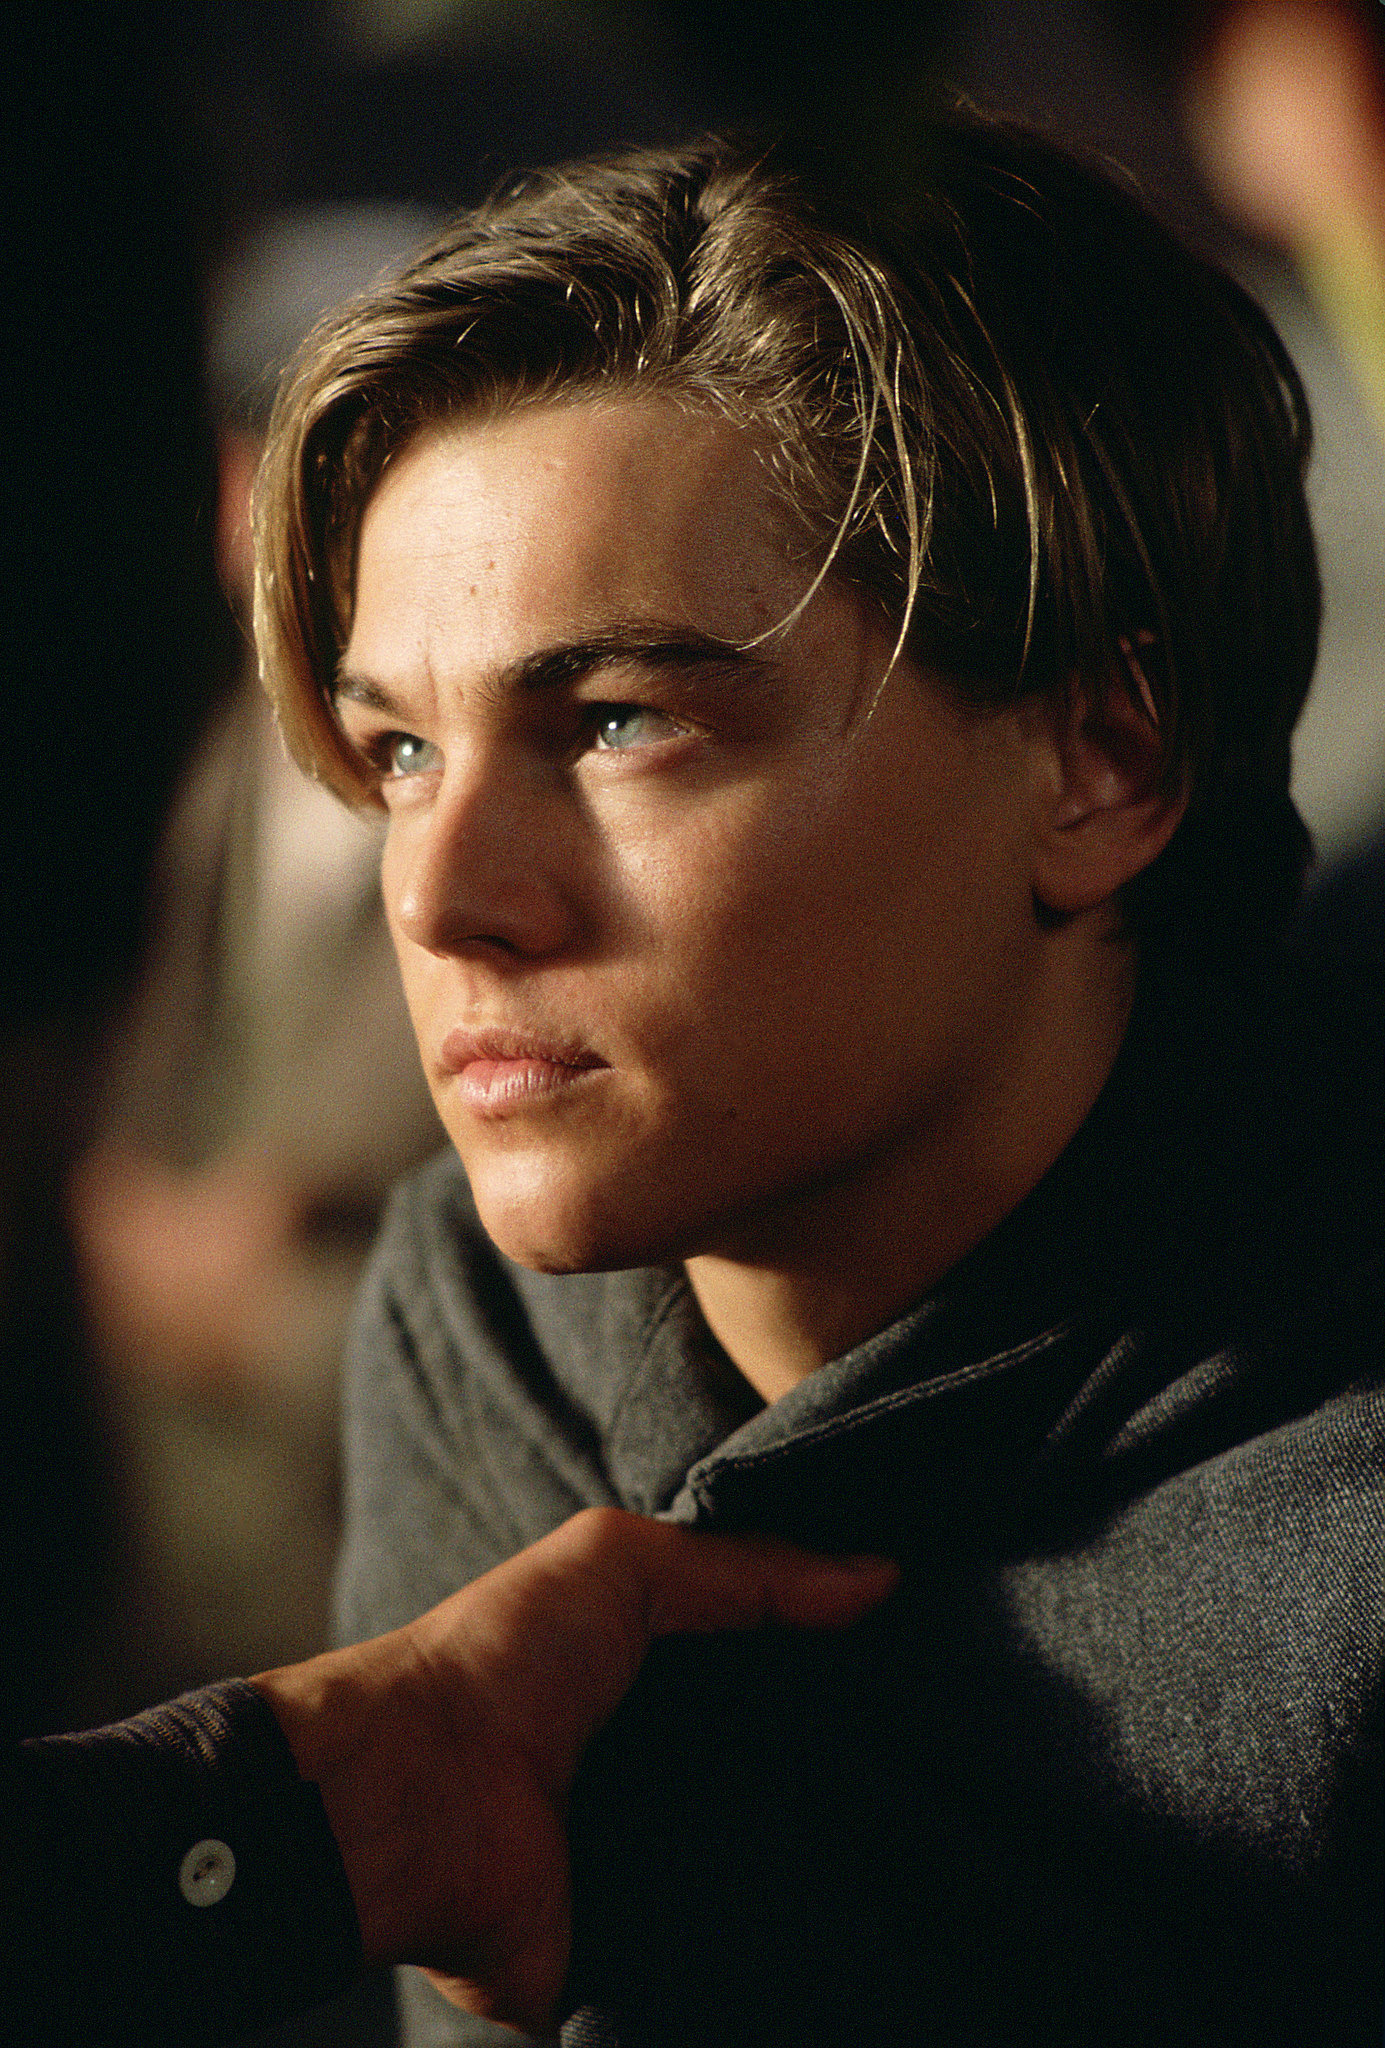 Leonardo DiCaprio in Titanic. | Swoon Over These Original Titanic Pictures | POPSUGAR ...